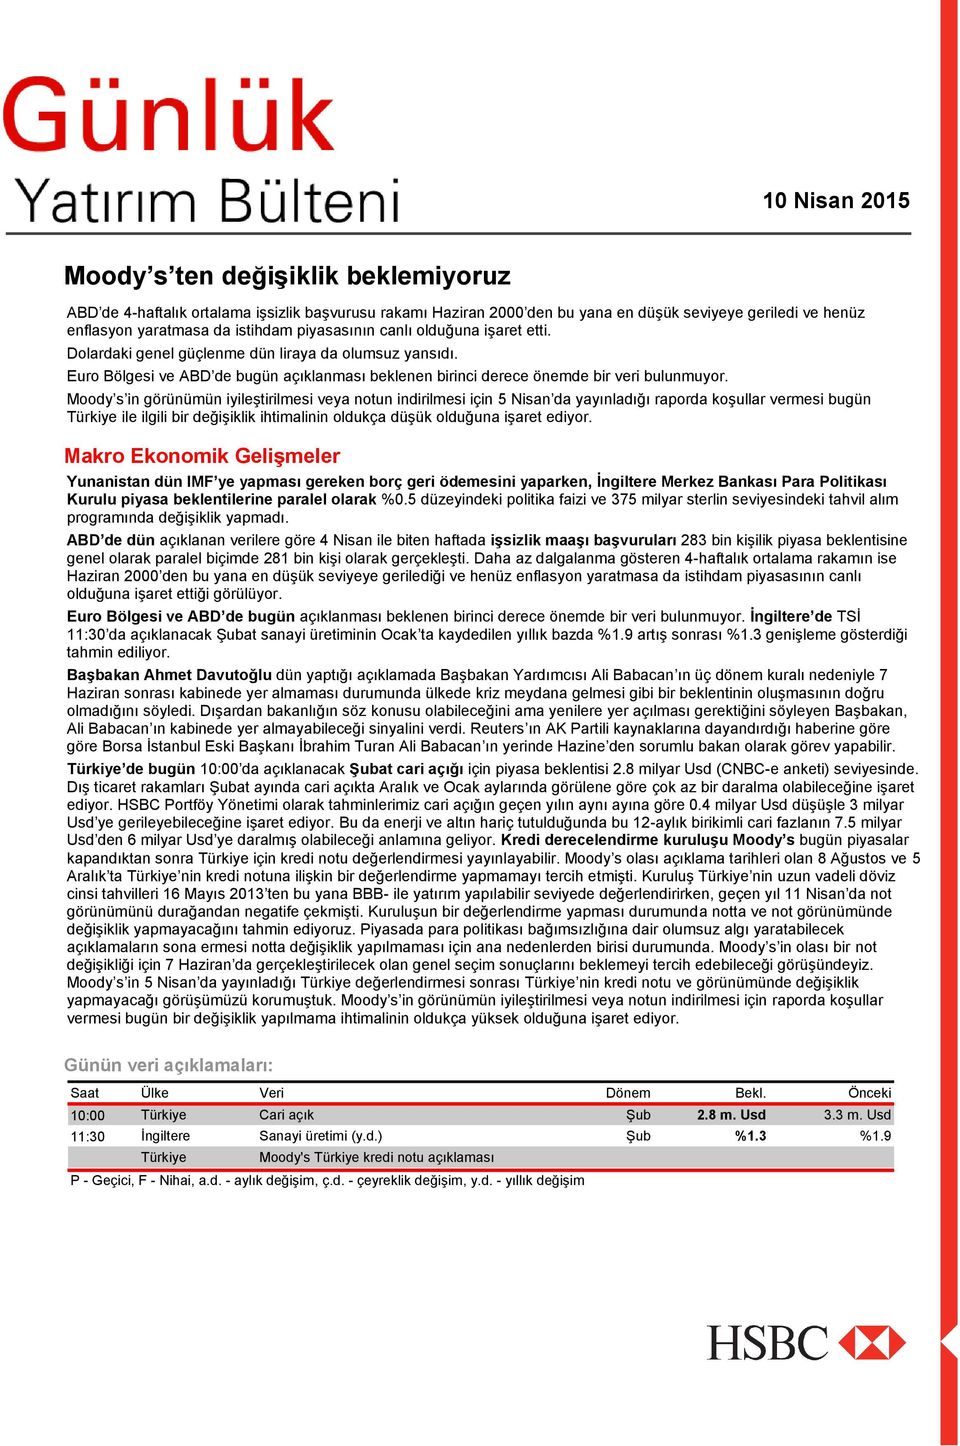 Moody s in görünümün iyileştirilmesi veya notun indirilmesi için 5 Nisan da yayınladığı raporda koşullar vermesi bugün Türkiye ile ilgili bir değişiklik ihtimalinin oldukça düşük olduğuna işaret